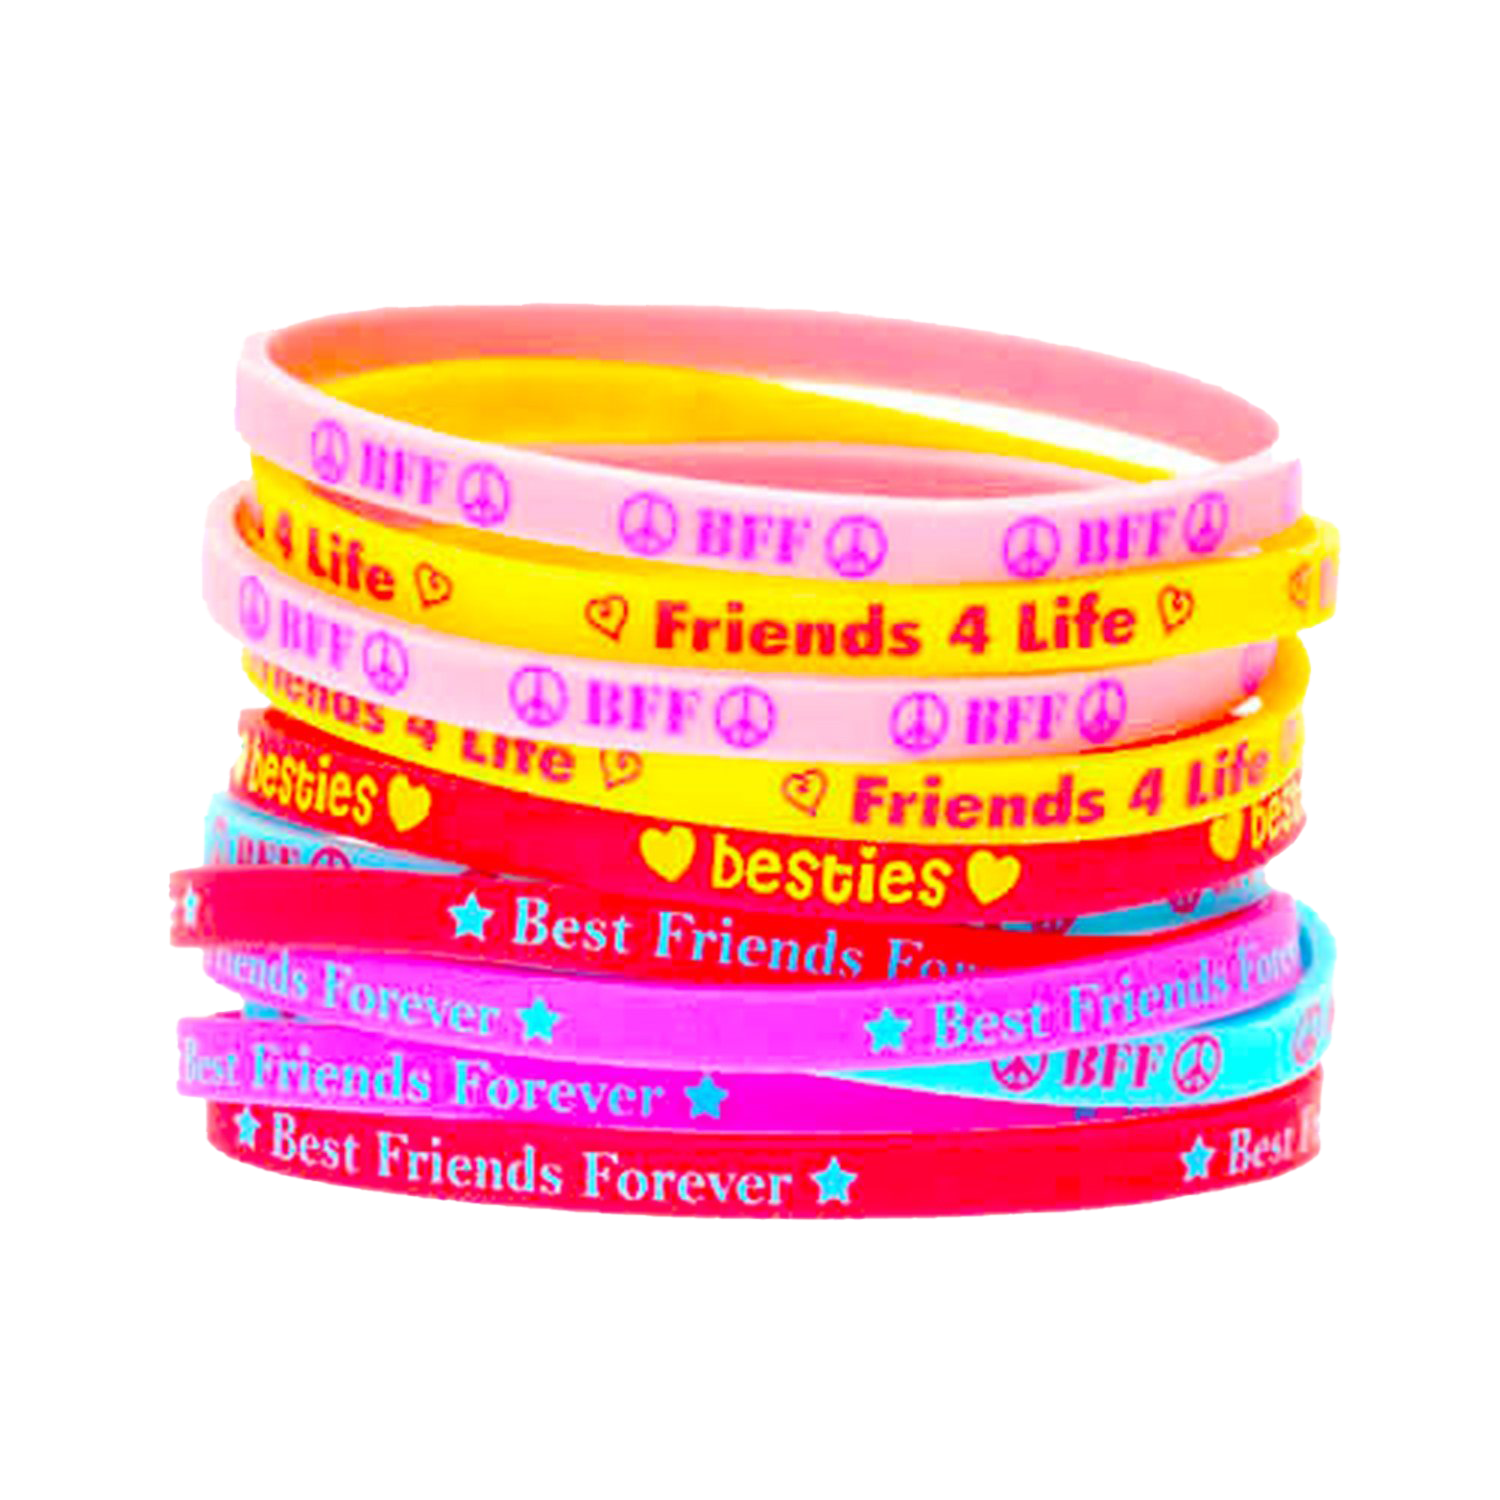 Friendship Bracelet PNG Transparent Images Free Download, Vector Files